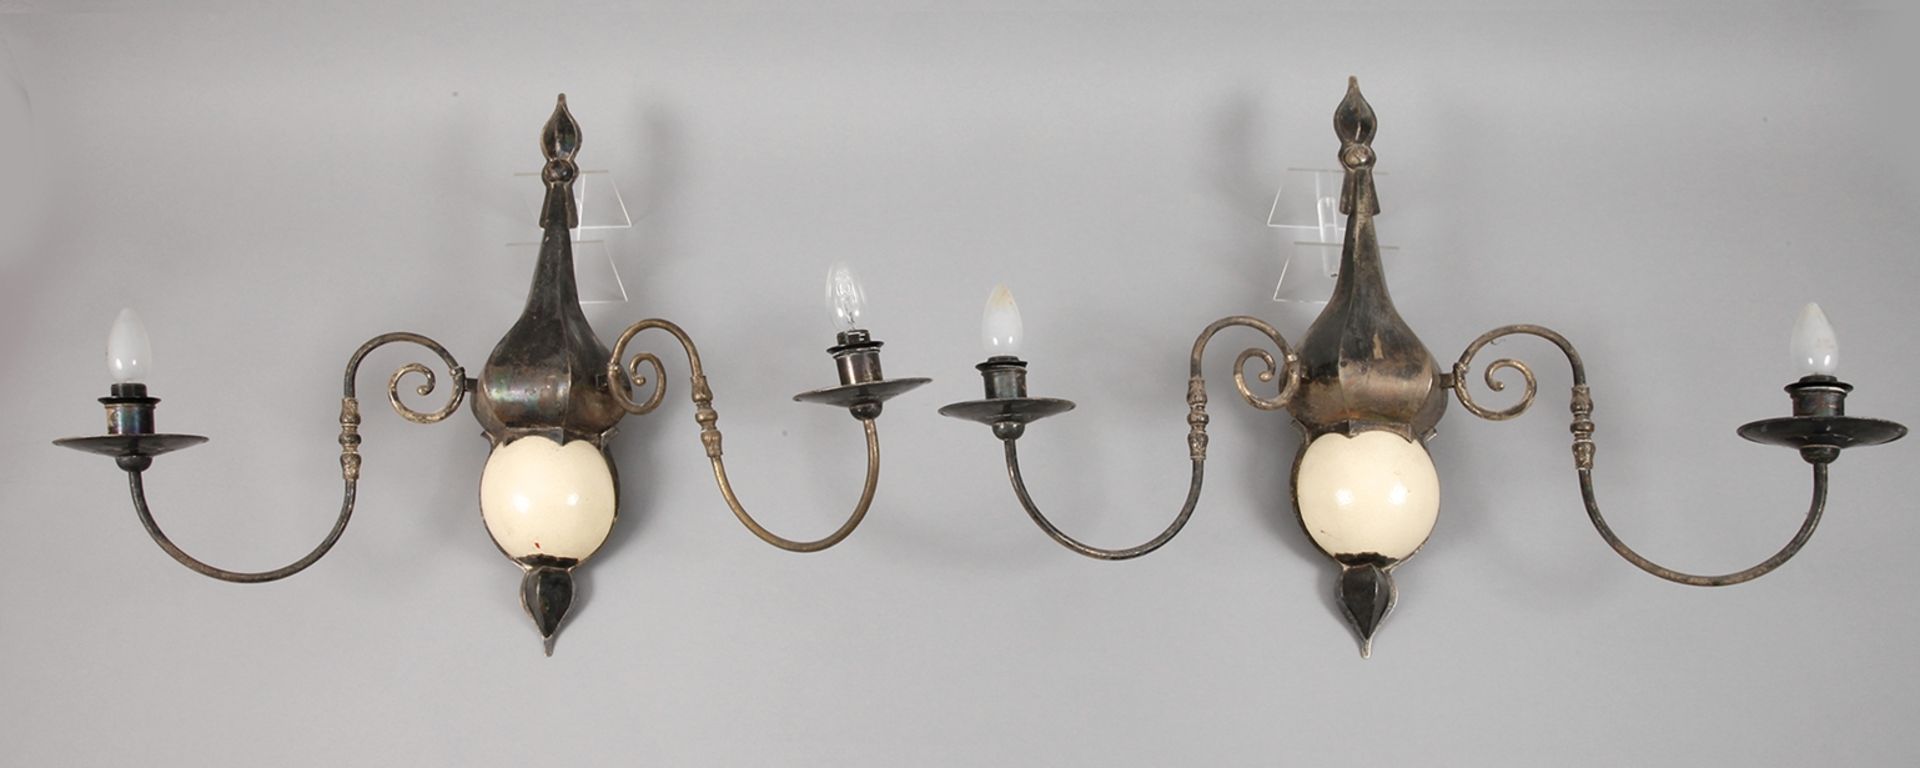 Paar außergewöhnliche Wandlampen1930er Jahre, Eisenblech versilbert, balusterförmige Wandappliken